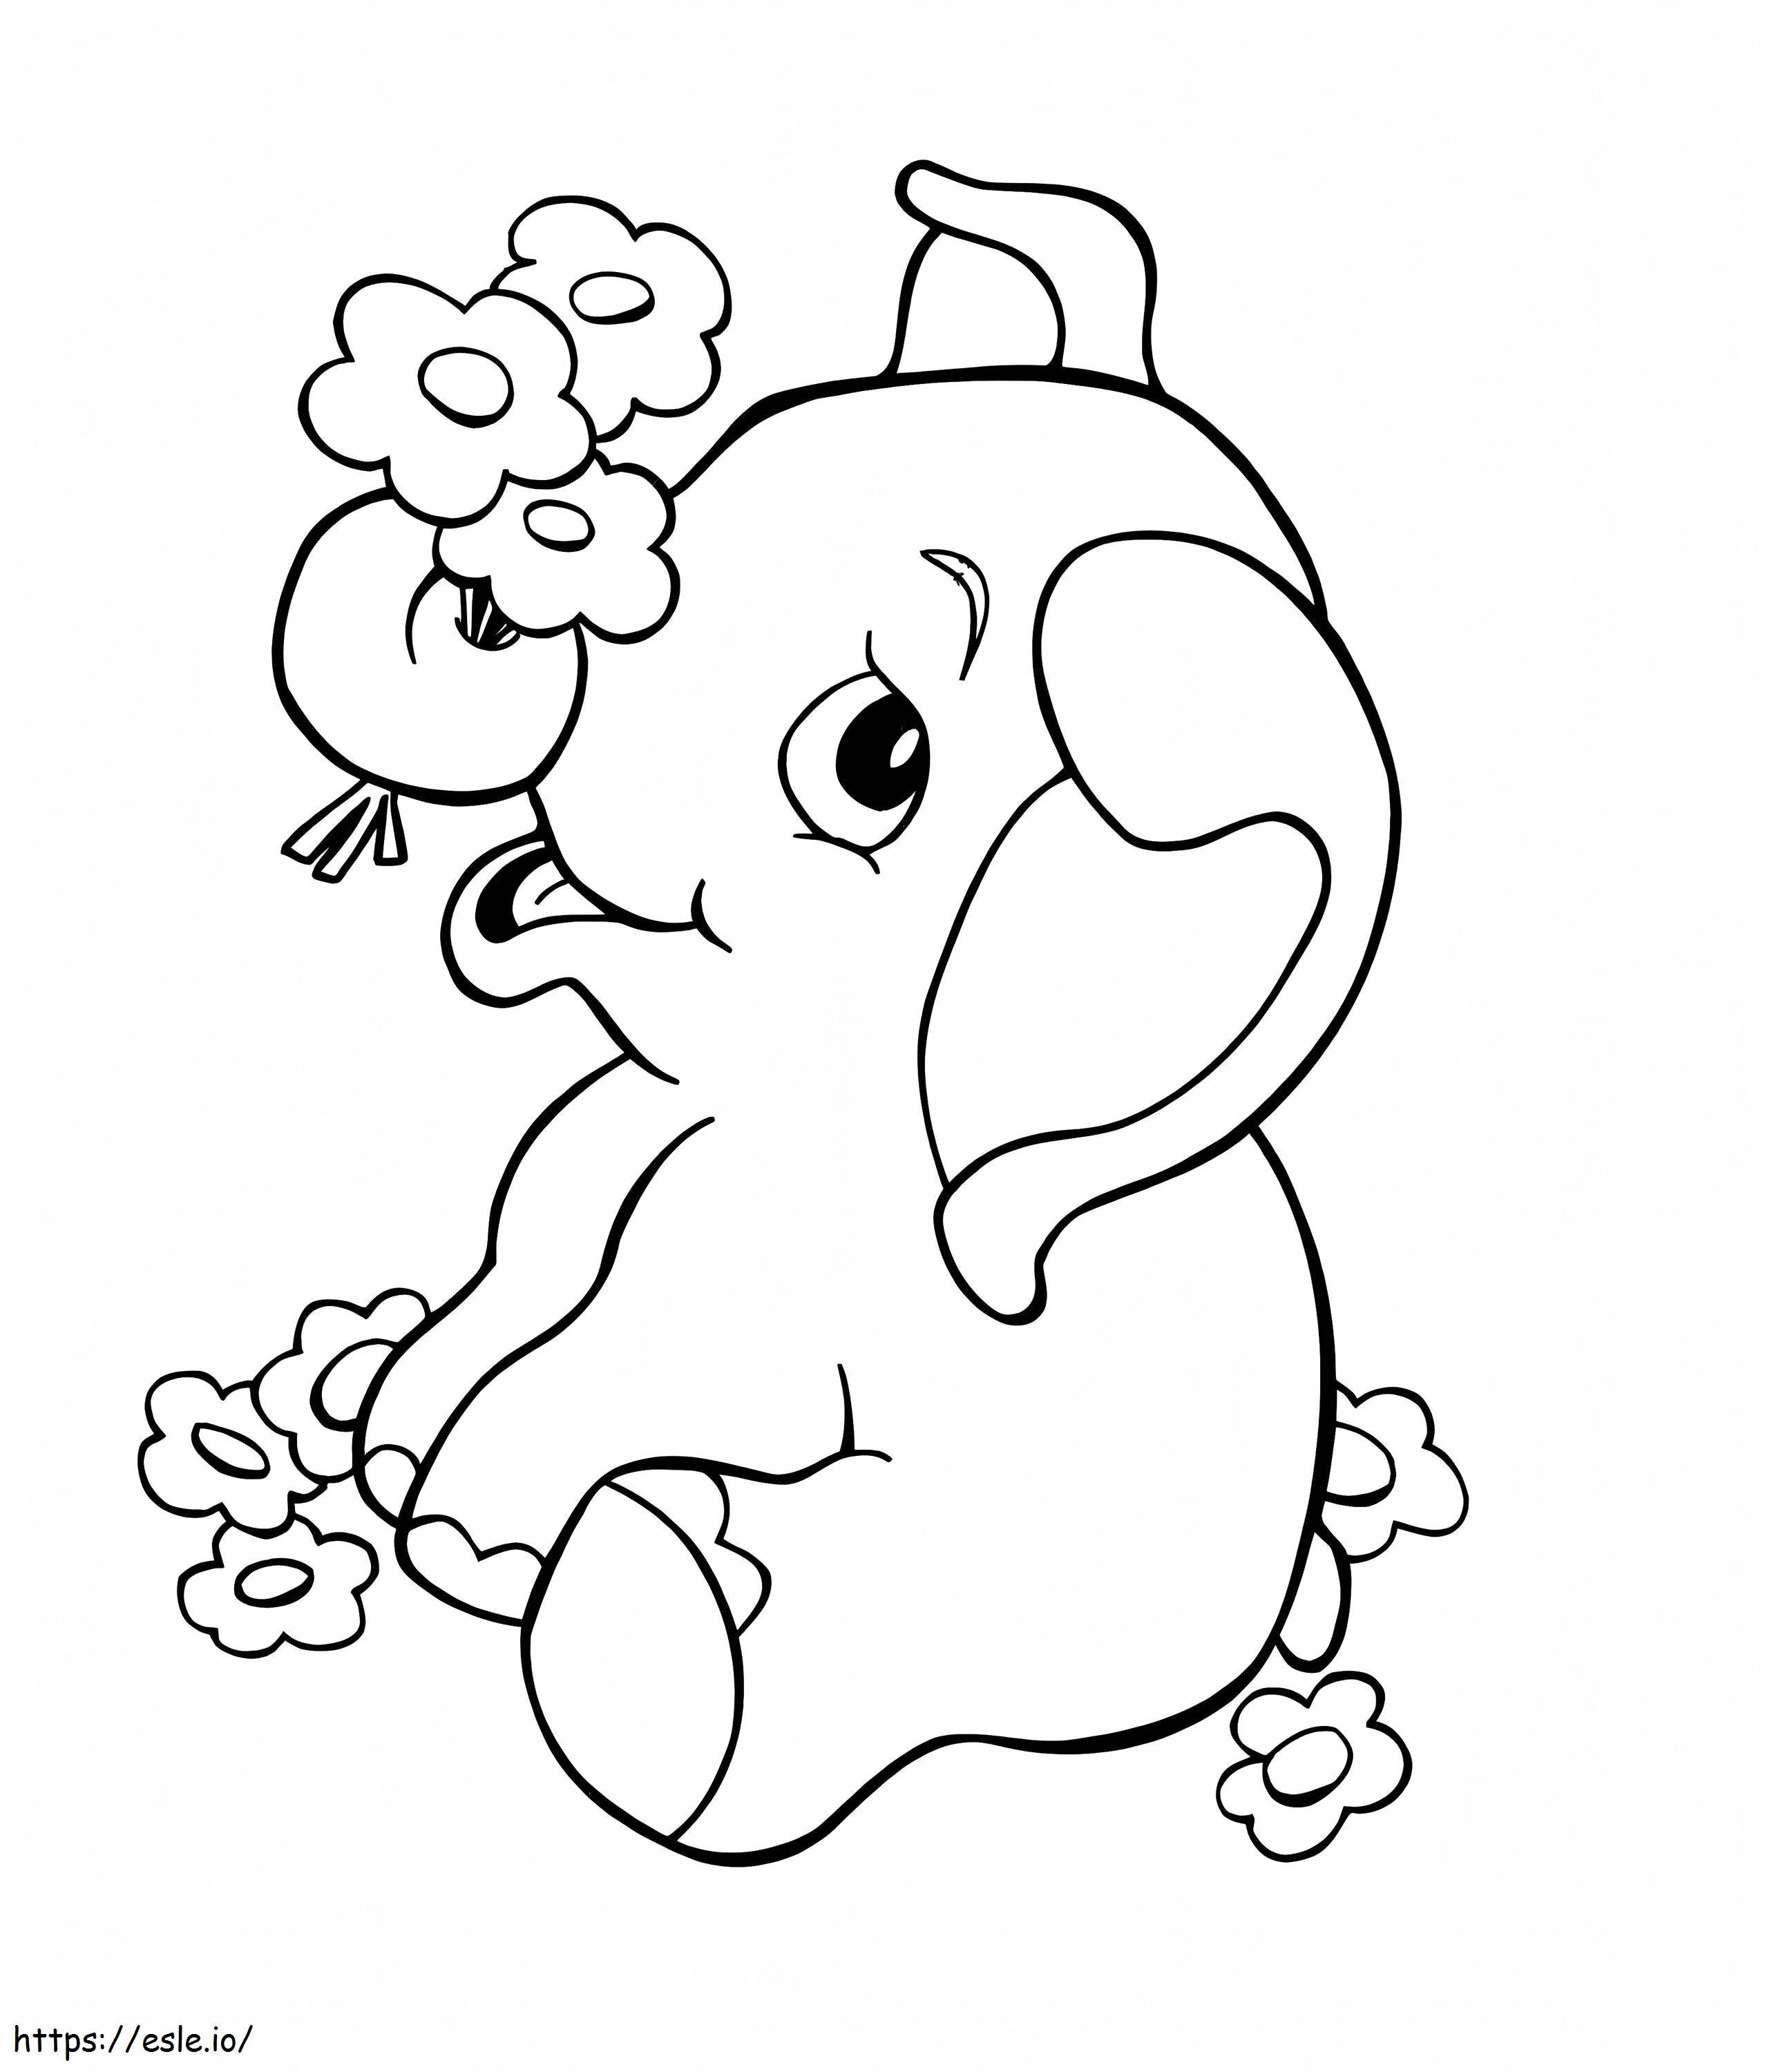 1570526314 Elefante Para Niños Elefante De Dibujos Animados Los mejores préstamos para mejorar el hogar del bebé para niños para imprimir gratis para mal crédito para colorear